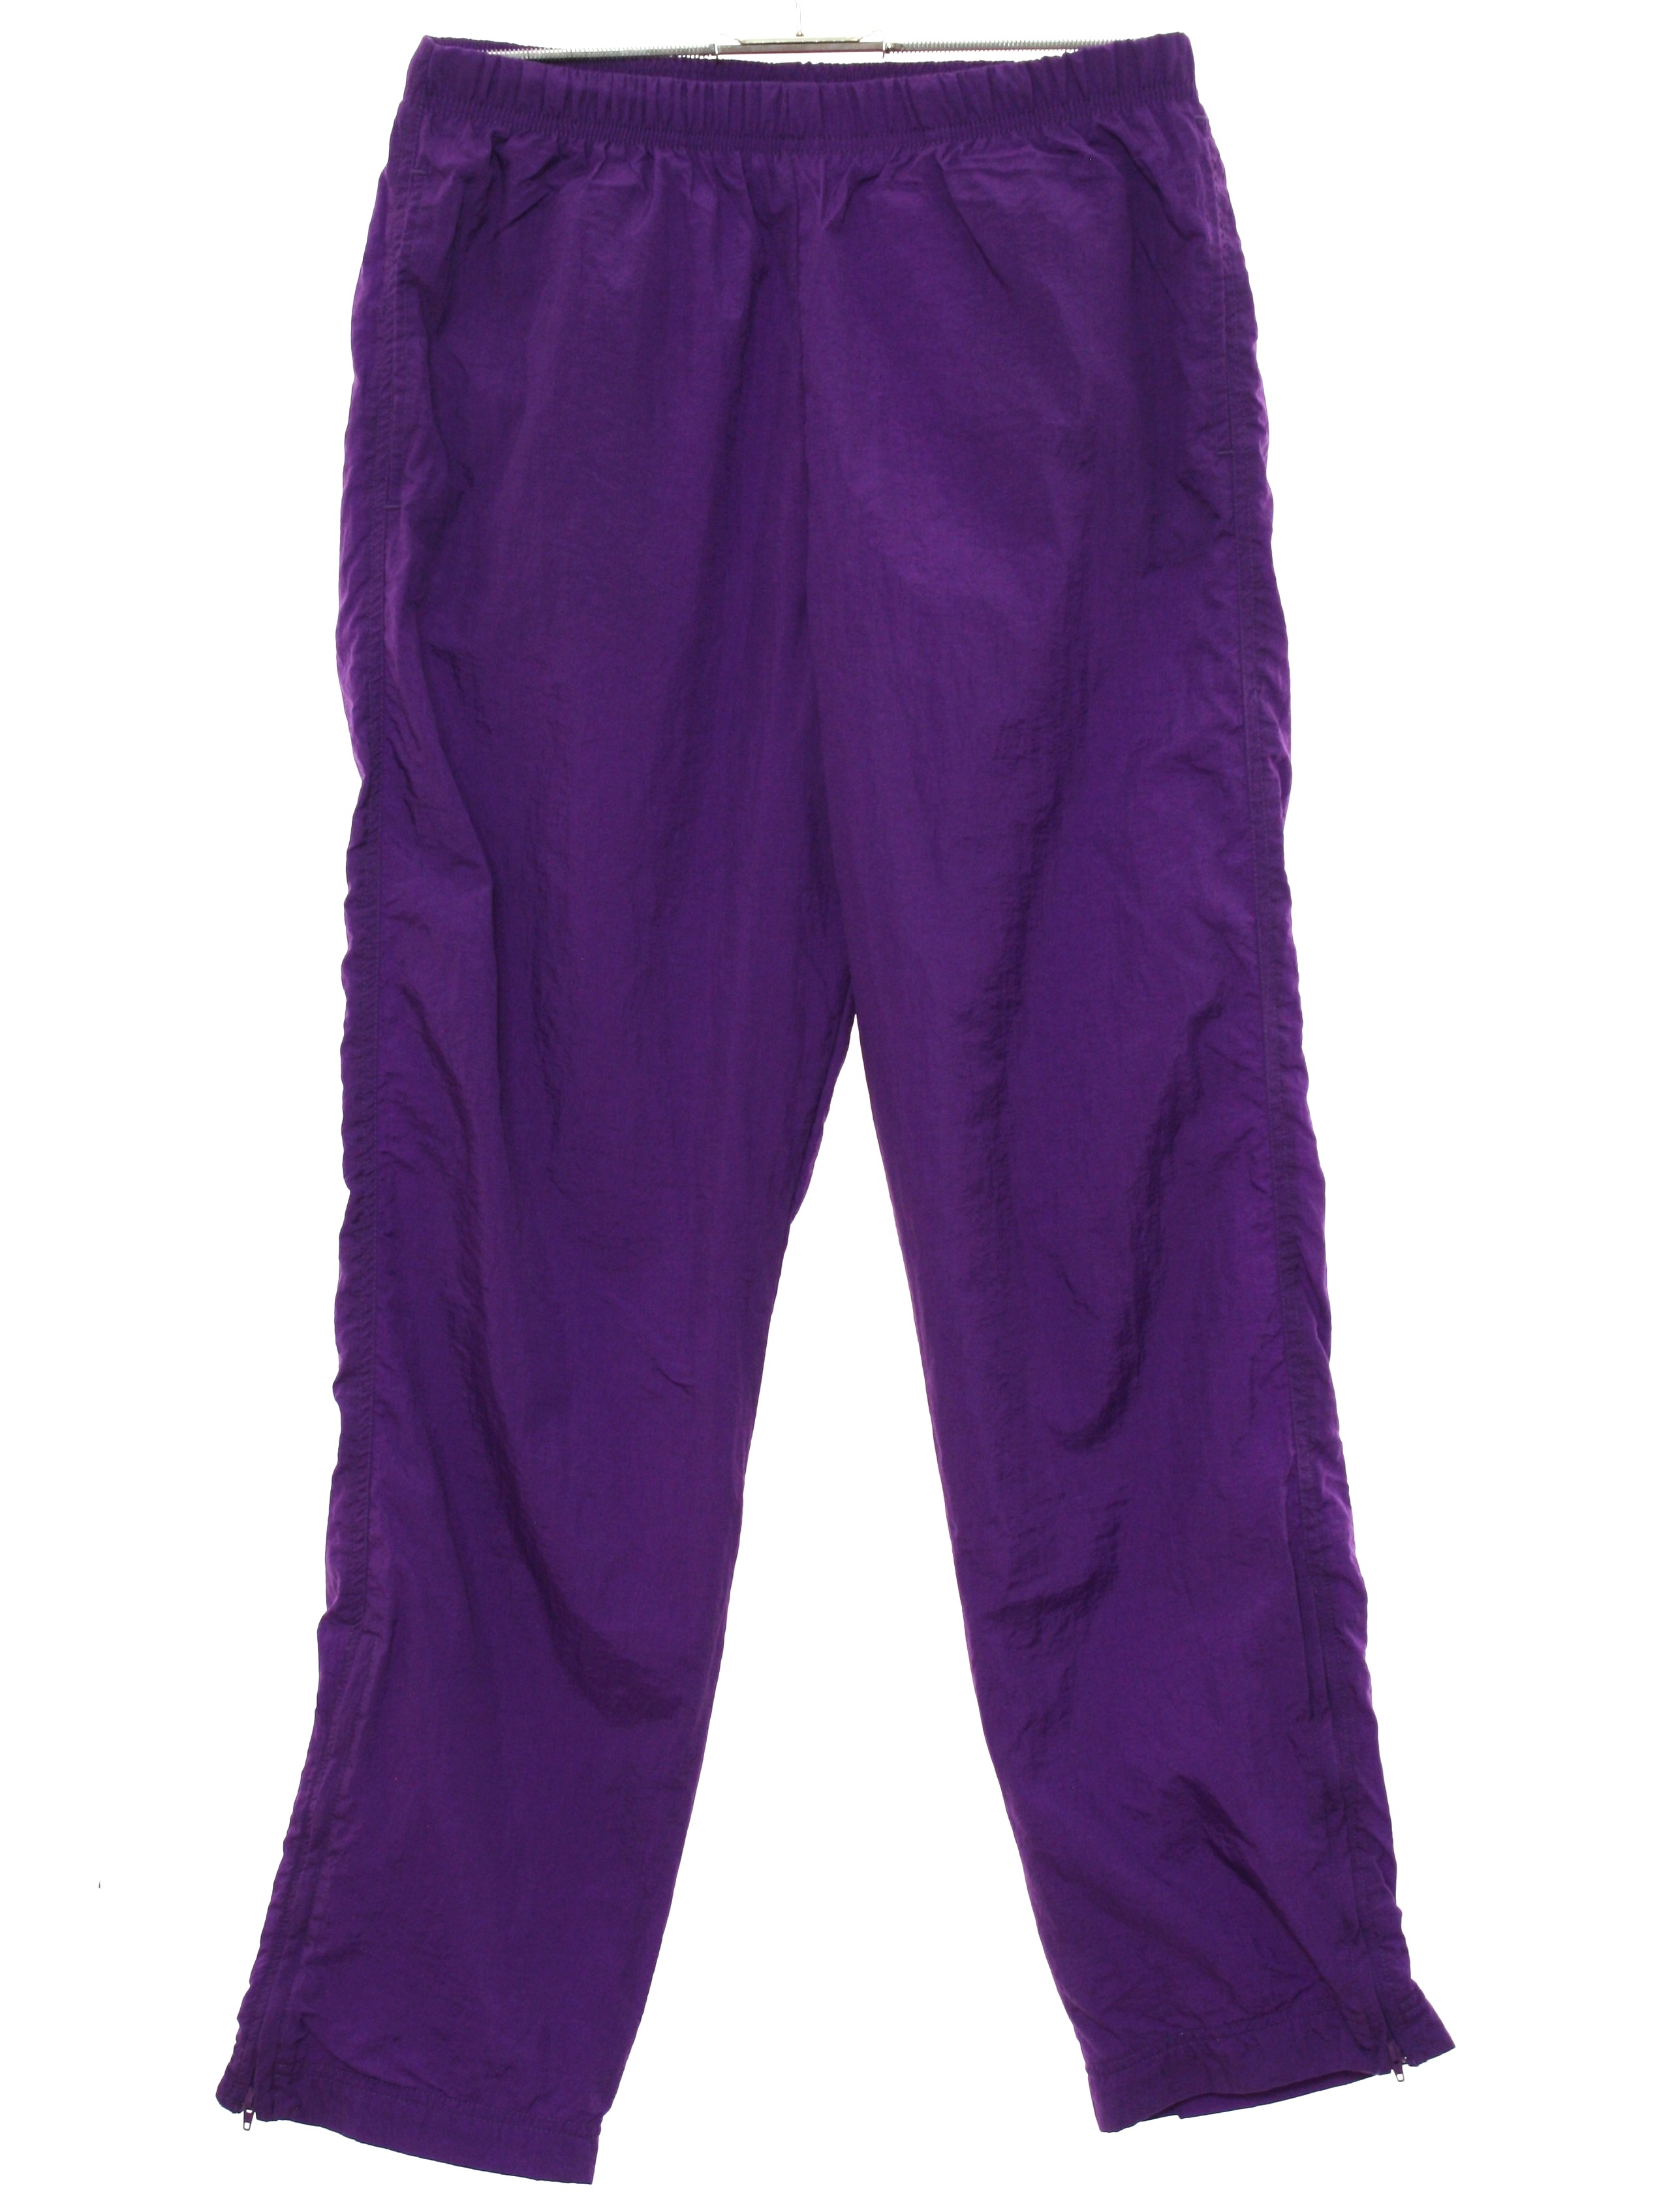 Vintage Nike 1990s Pants: 90s -Nike- Womens dark purple solid colored ...